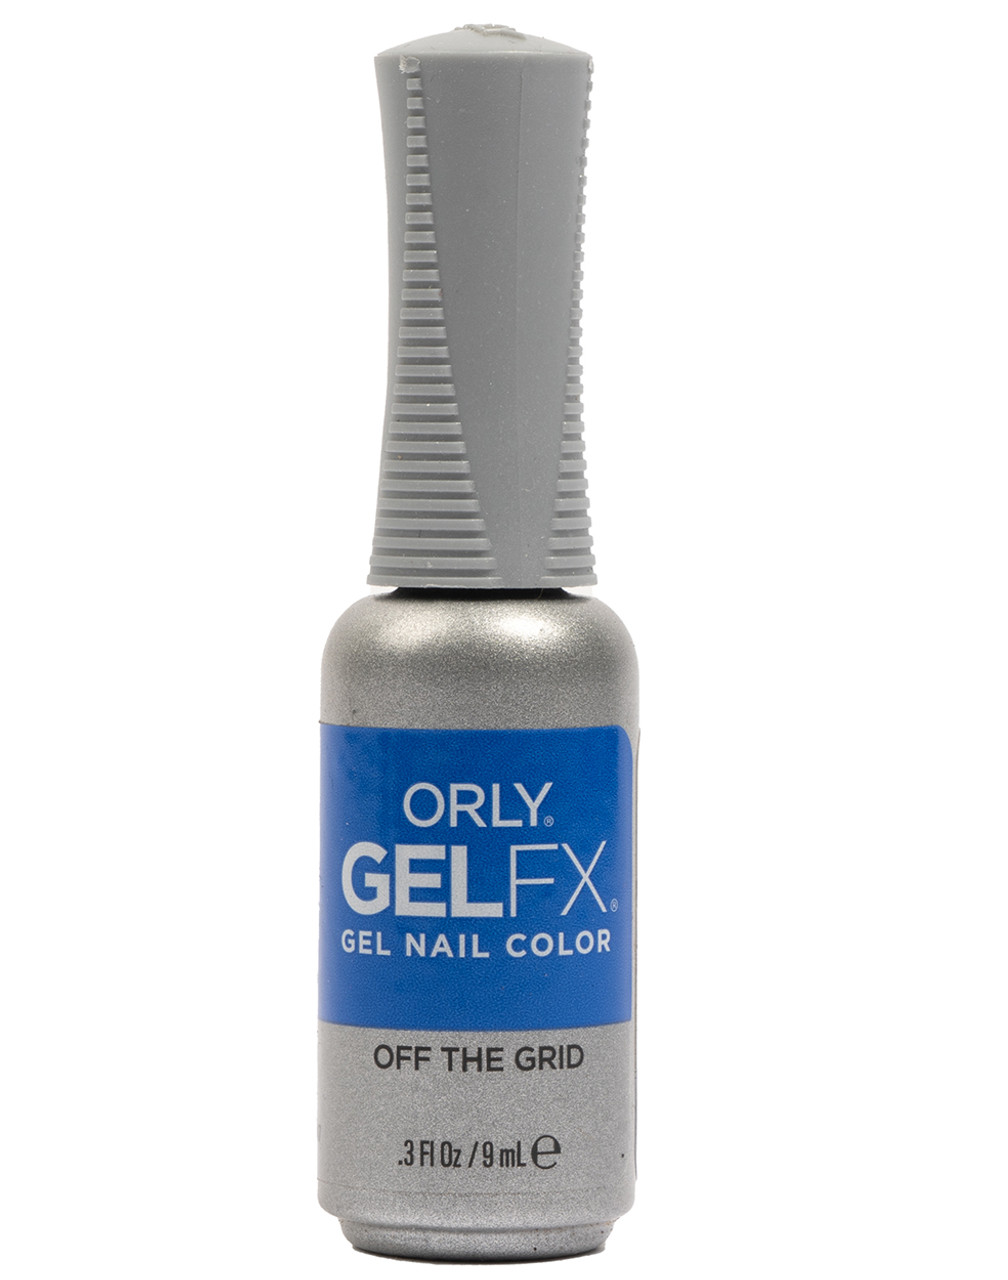 Orly Gel FX Soak-Off Gel Off The Grid - .3 fl oz / 9 ml